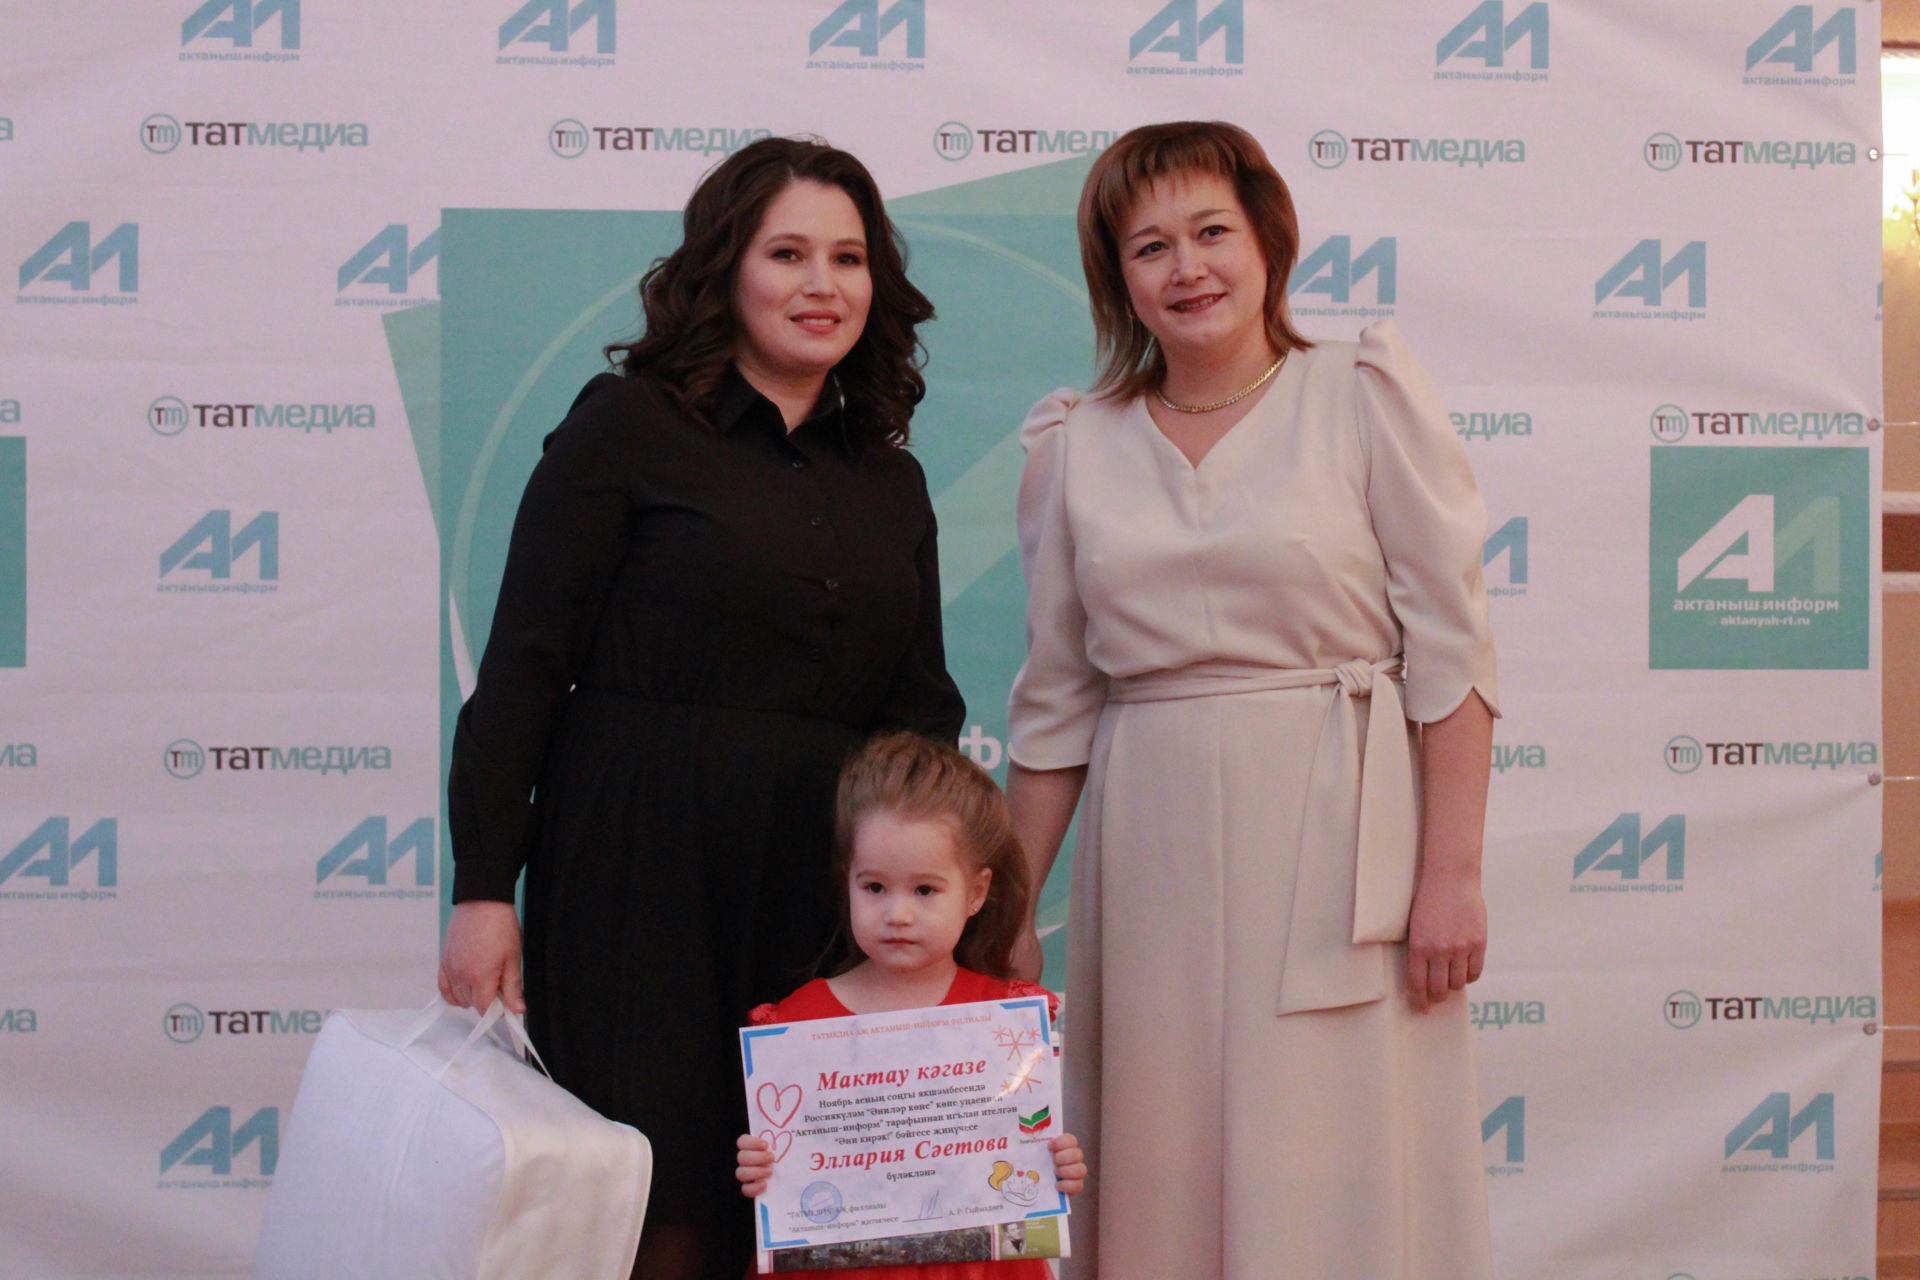 Ләйсән Нурлыева: "Актаныш-информ" бәйгесенә катнашып балаларыгыз сезне бар дөньяга танытты